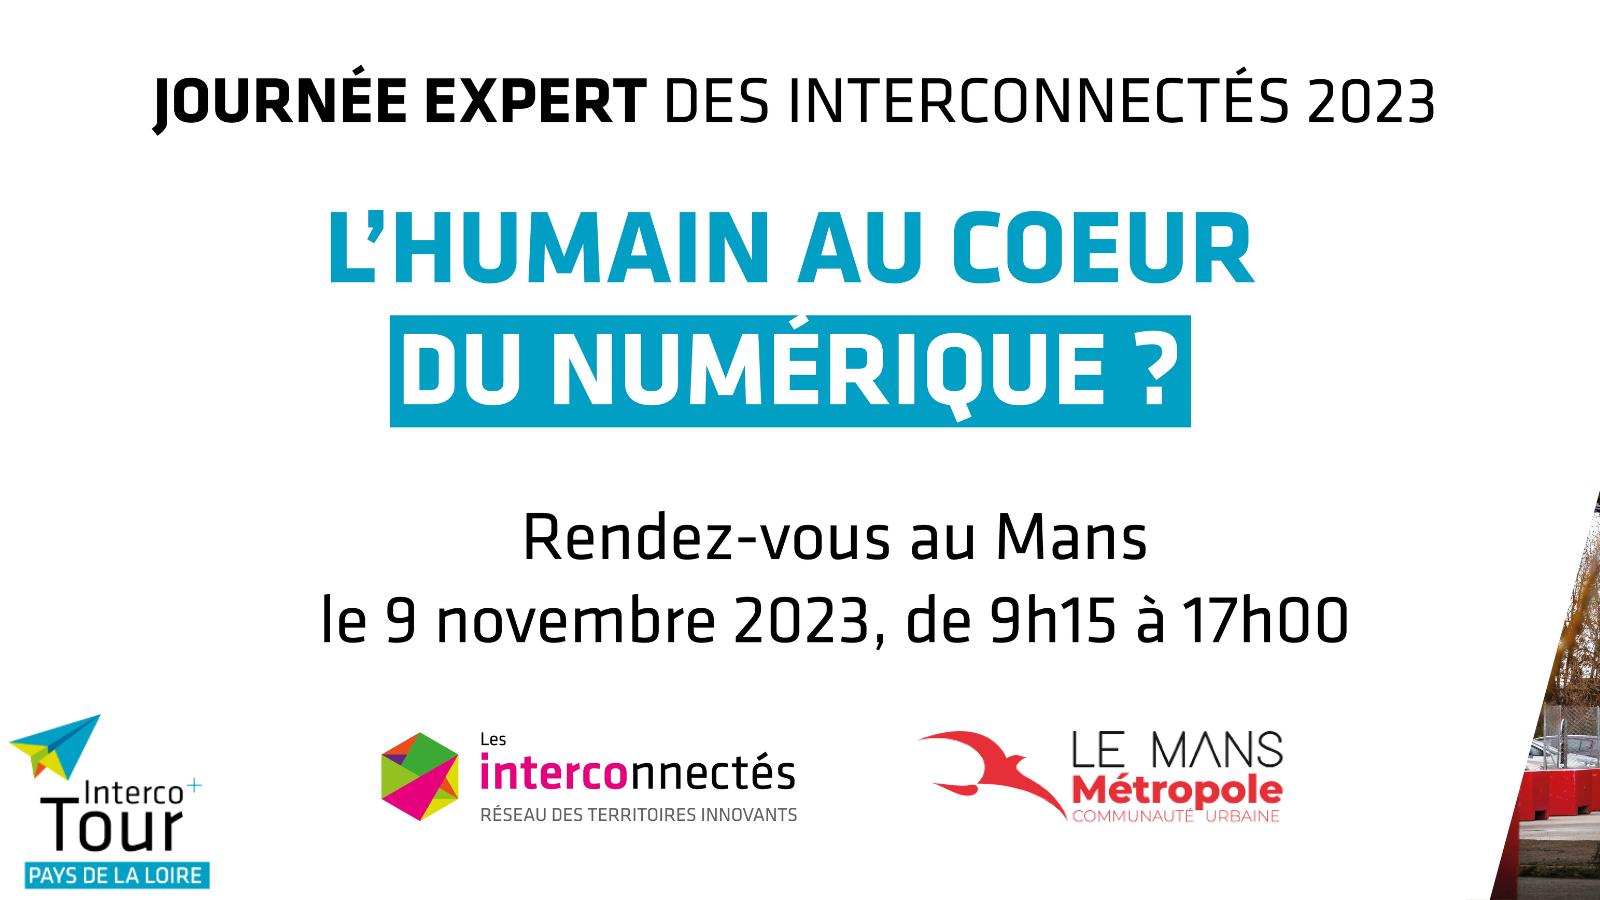 Journée expert des interconnectés 2023 L'humain au cœur du numérique ? Rendez-vous au Mans le 9 novembre 2023, de 9h15 à 17h00